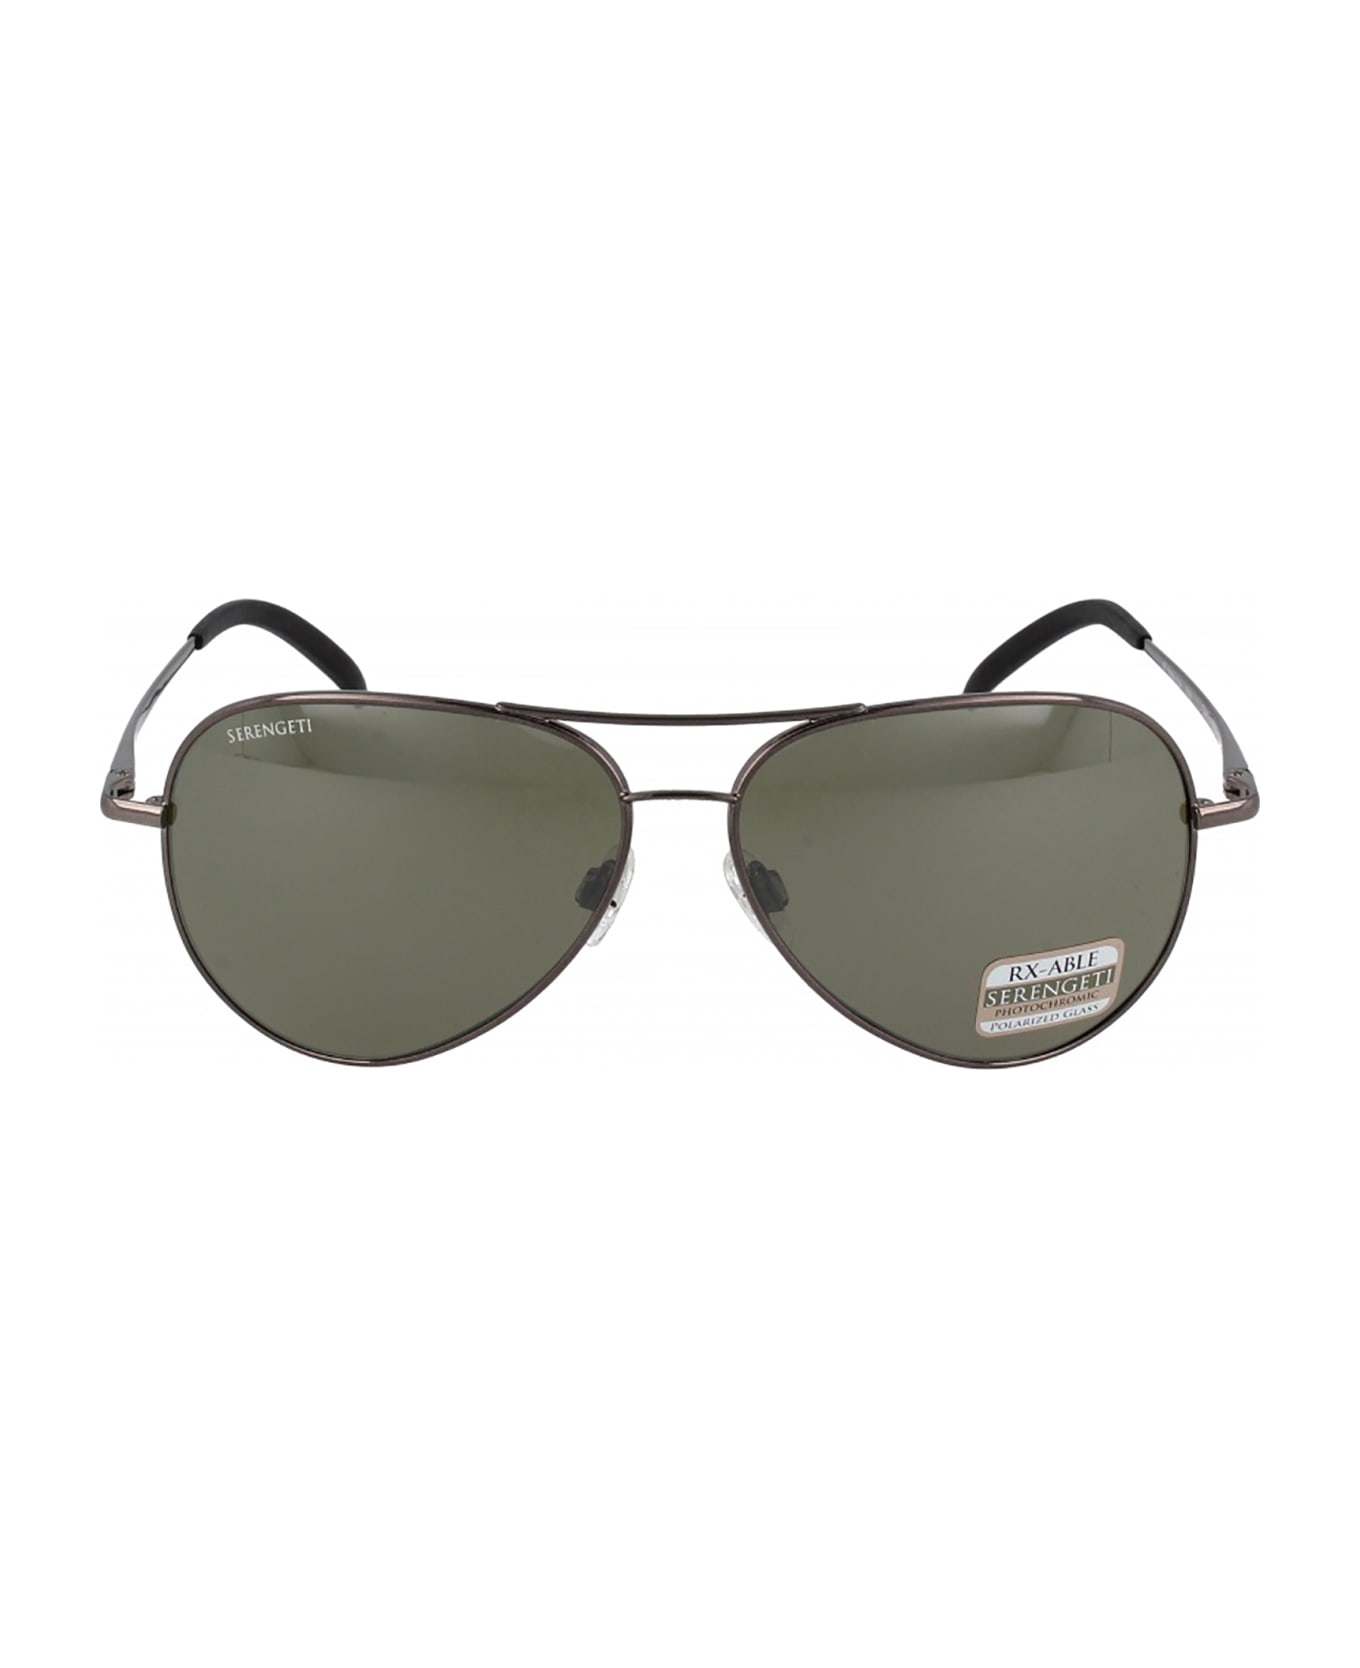 Serengeti Eyewear CARRARA GUNMETAL SHINY / MINER Sunglasses - Carrara